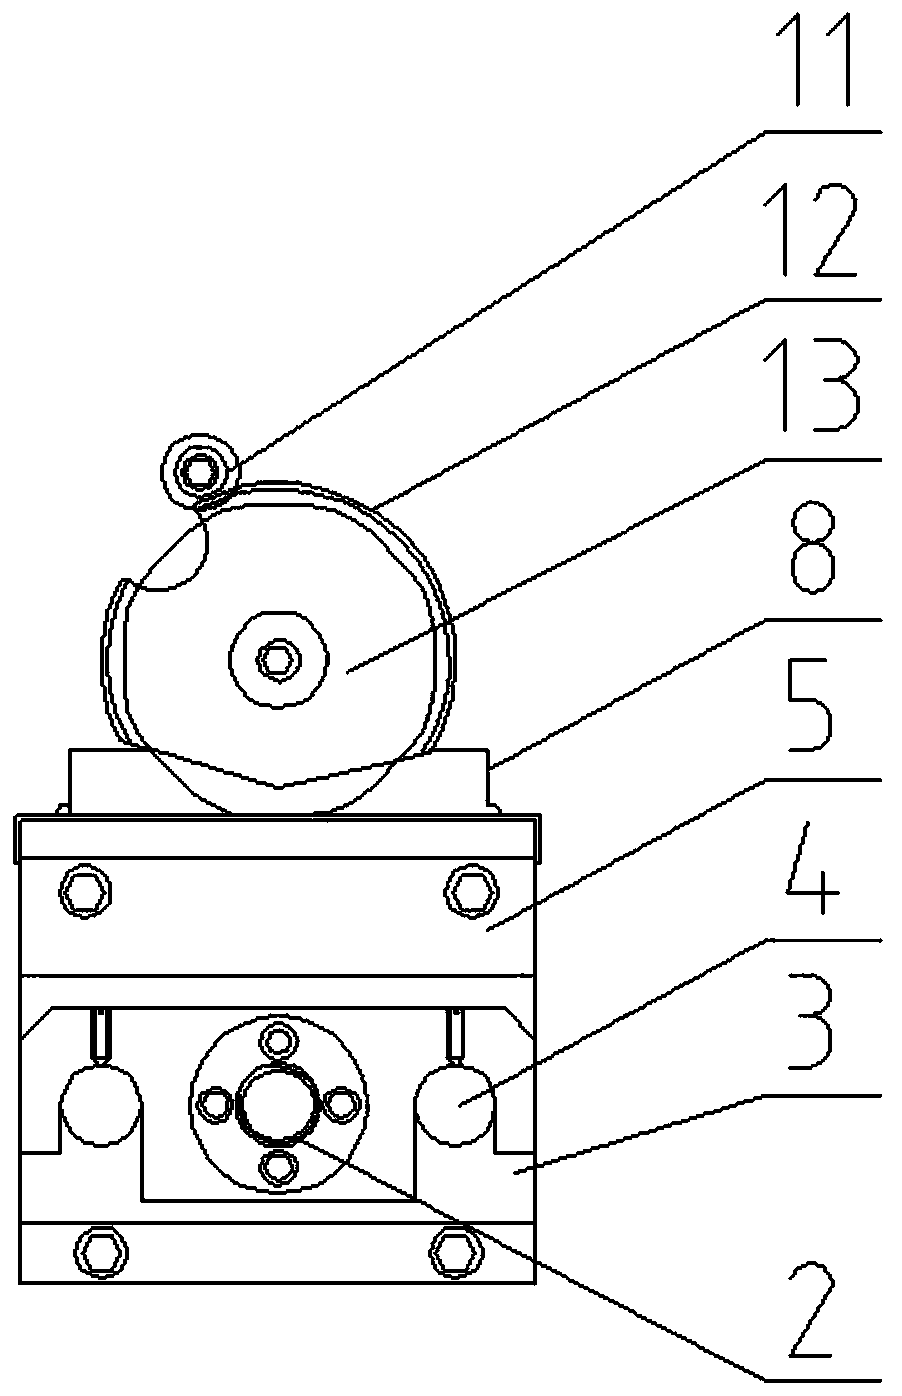 A multi-angular cutter mechanism